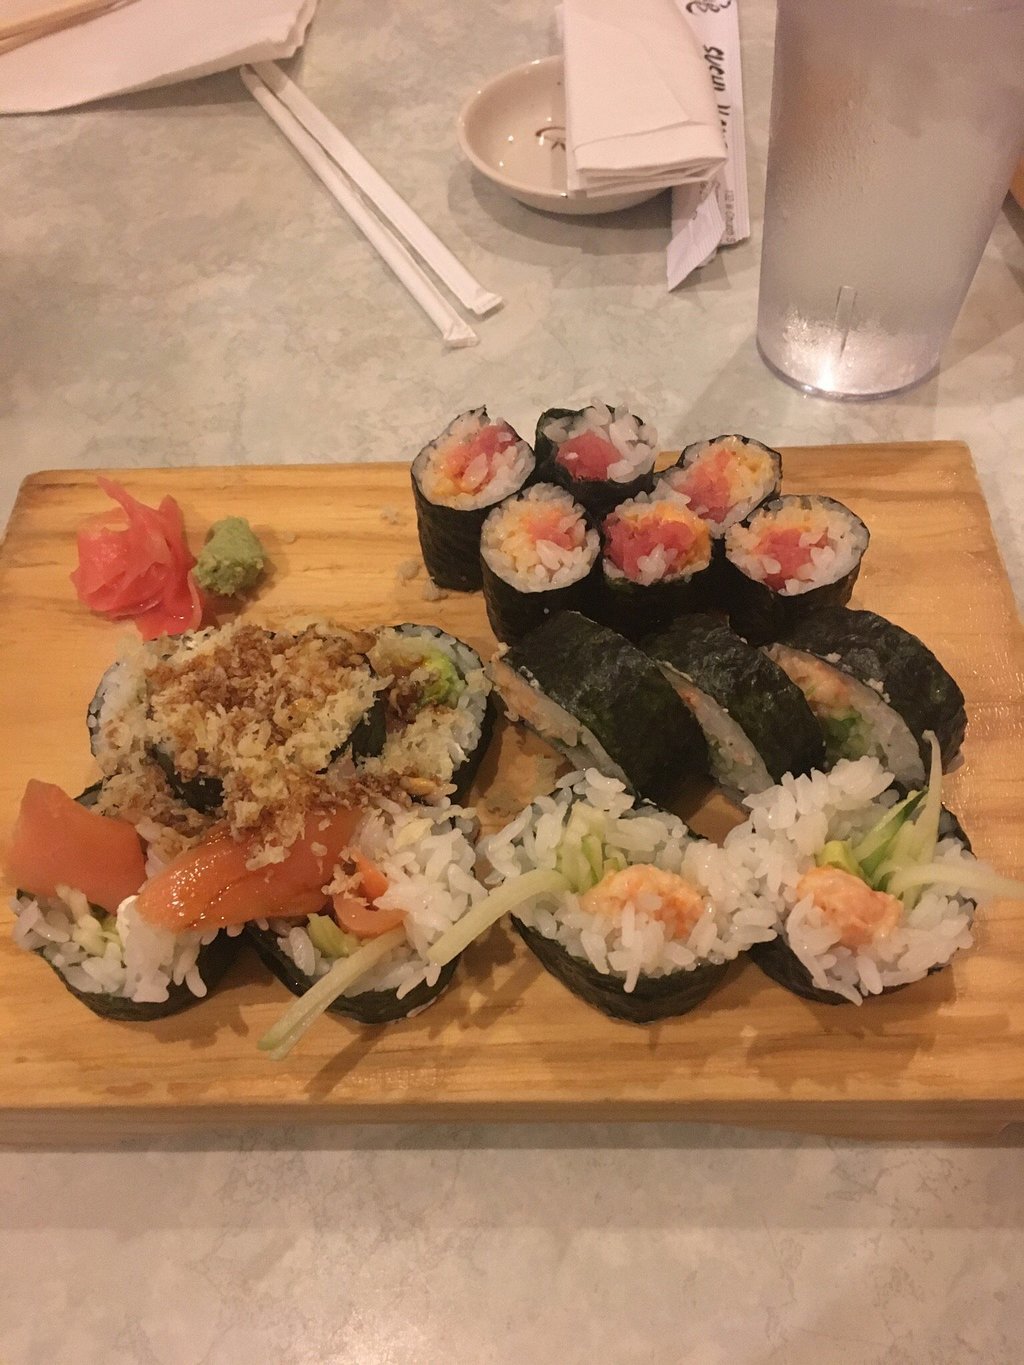 Sushi Kame